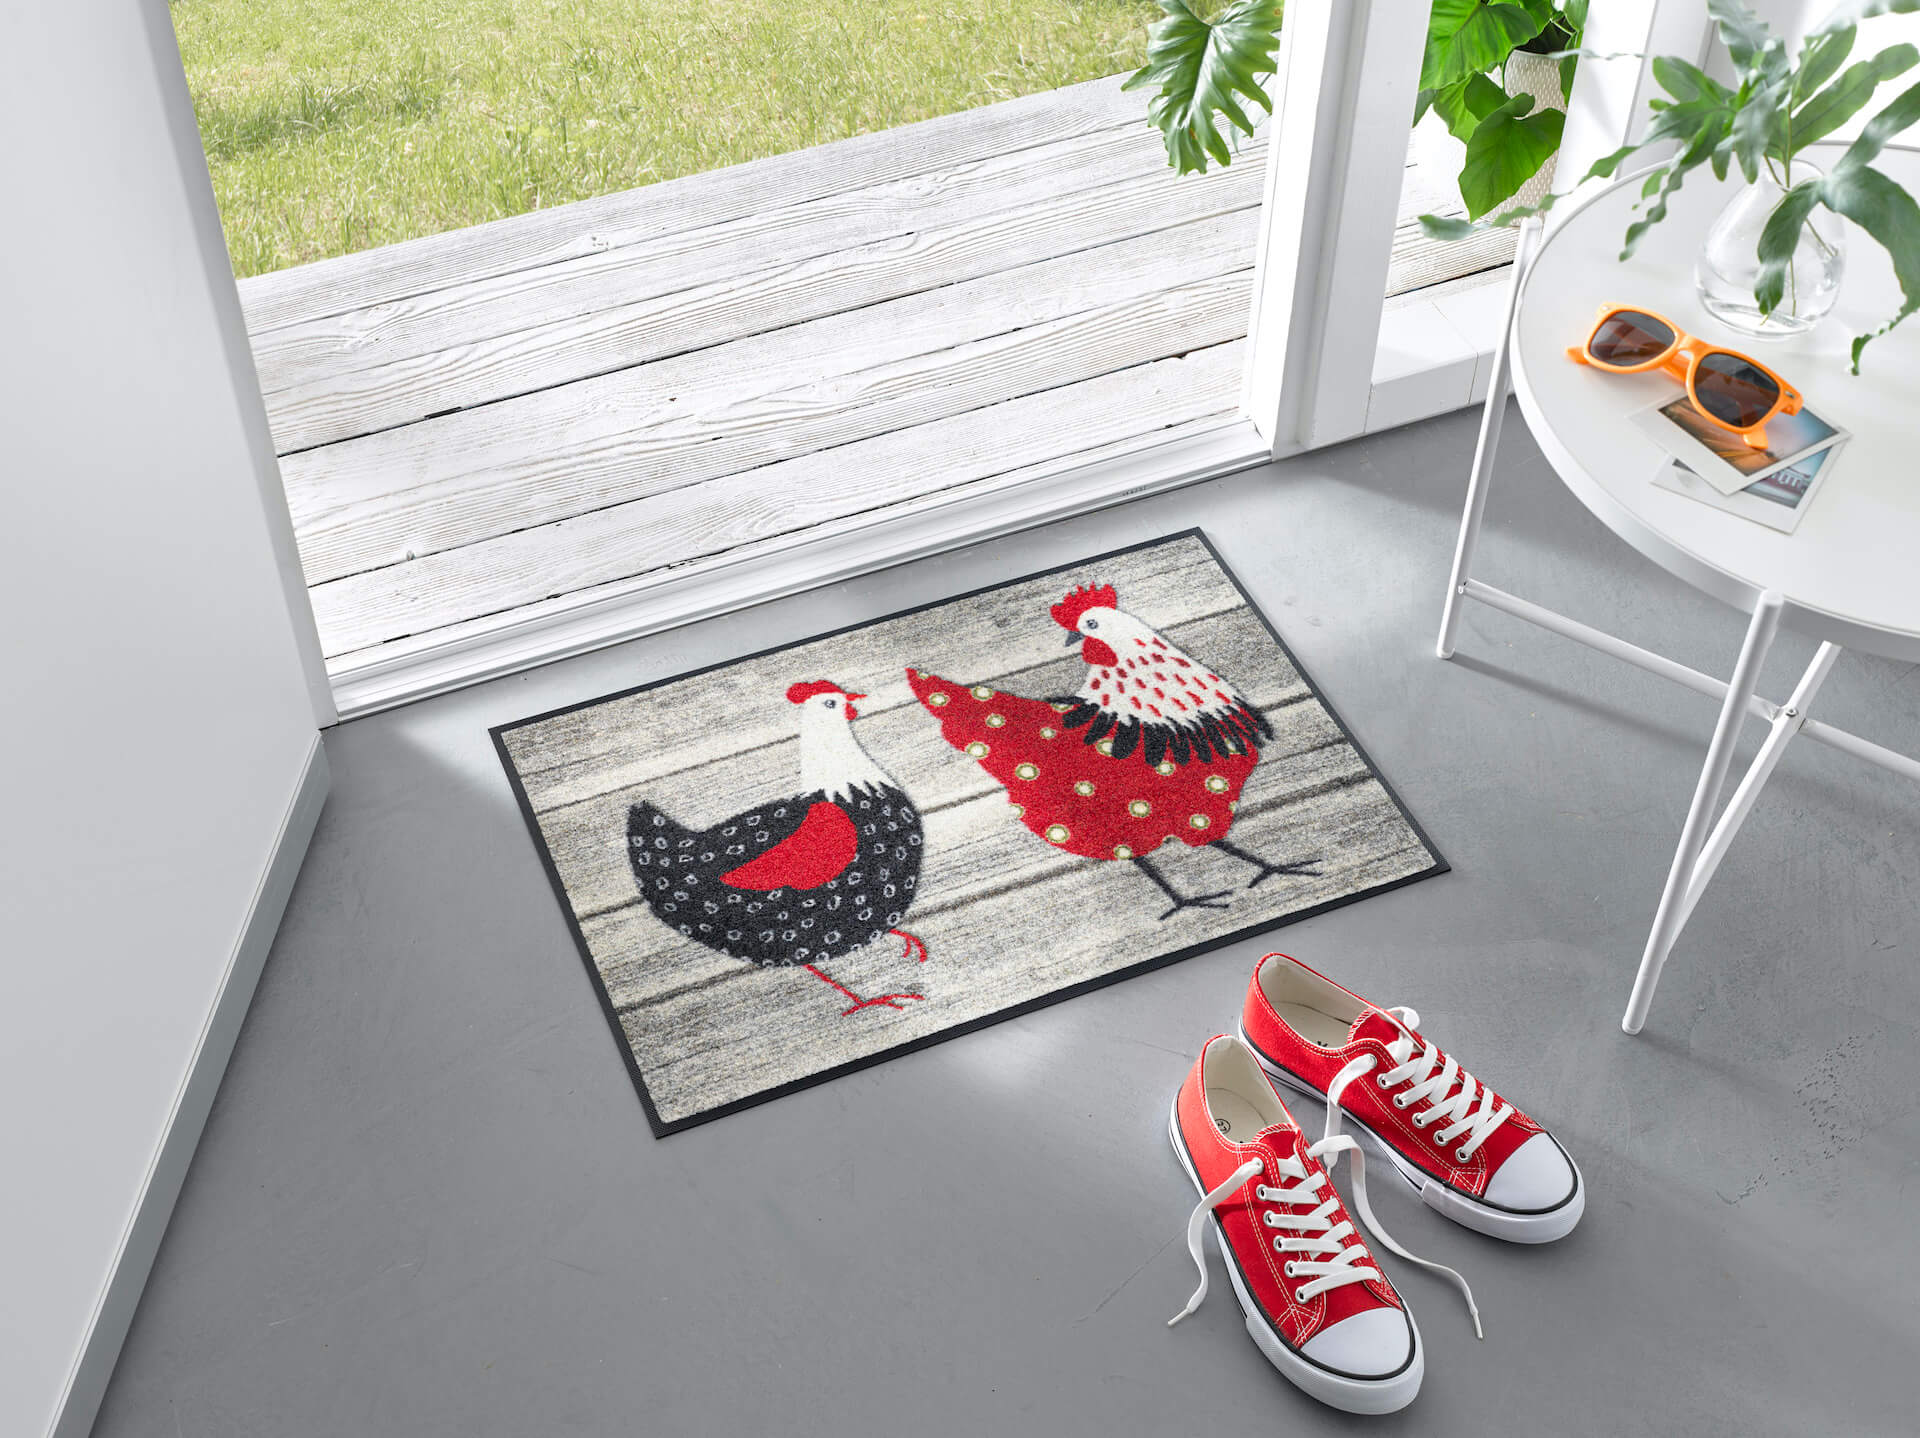 Fußmatte Chicken Farm, Wash & Dry Tiermotiv mit Hühnern, 040 x 060 cm, Milieubild